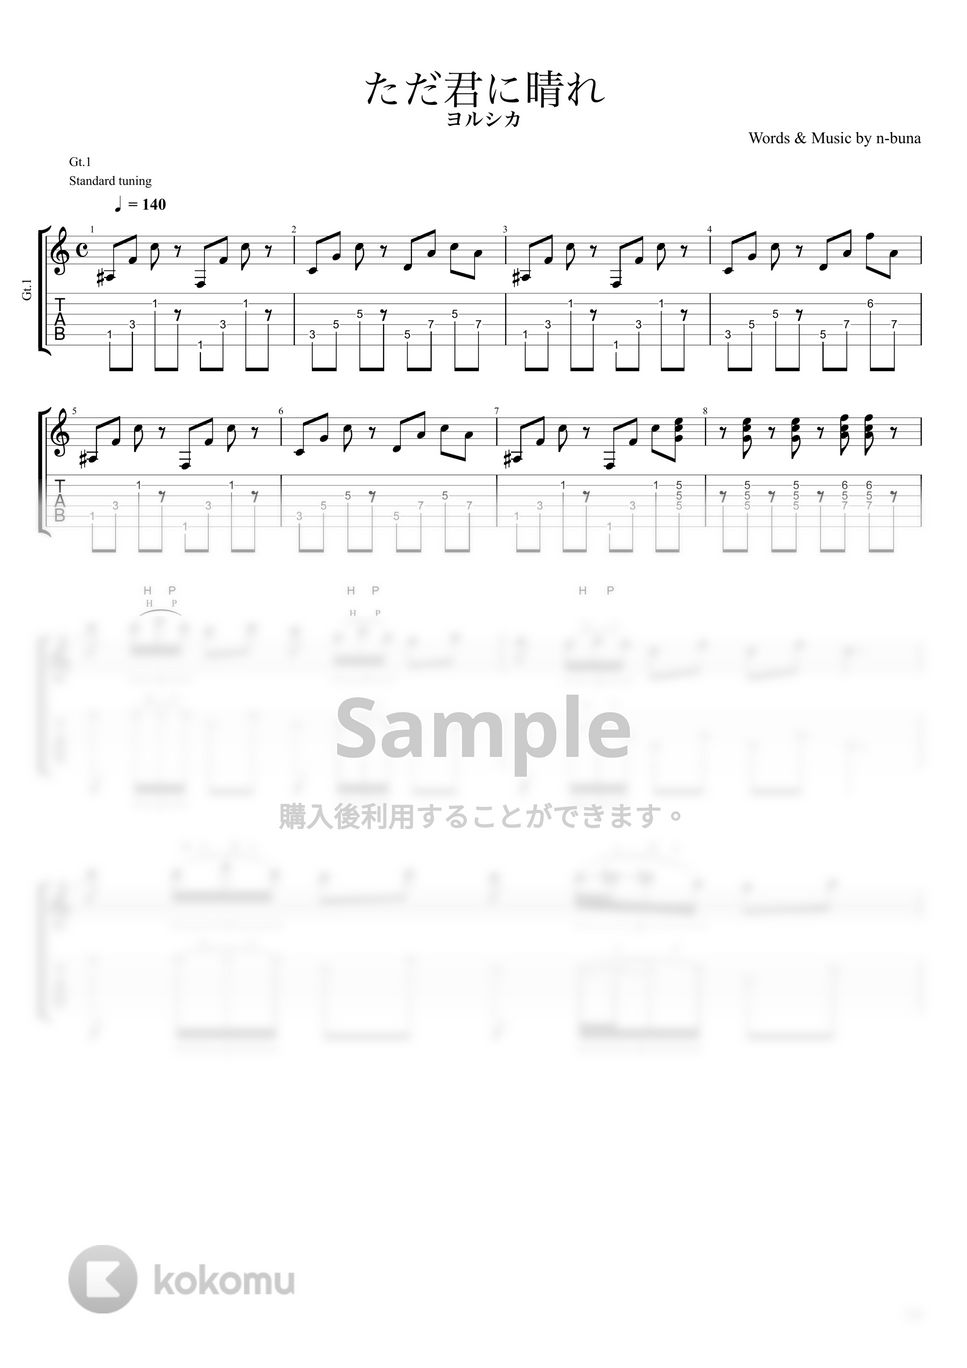 ヨルシカ - ただ君に晴れ (リードギターPart) by キリギリス